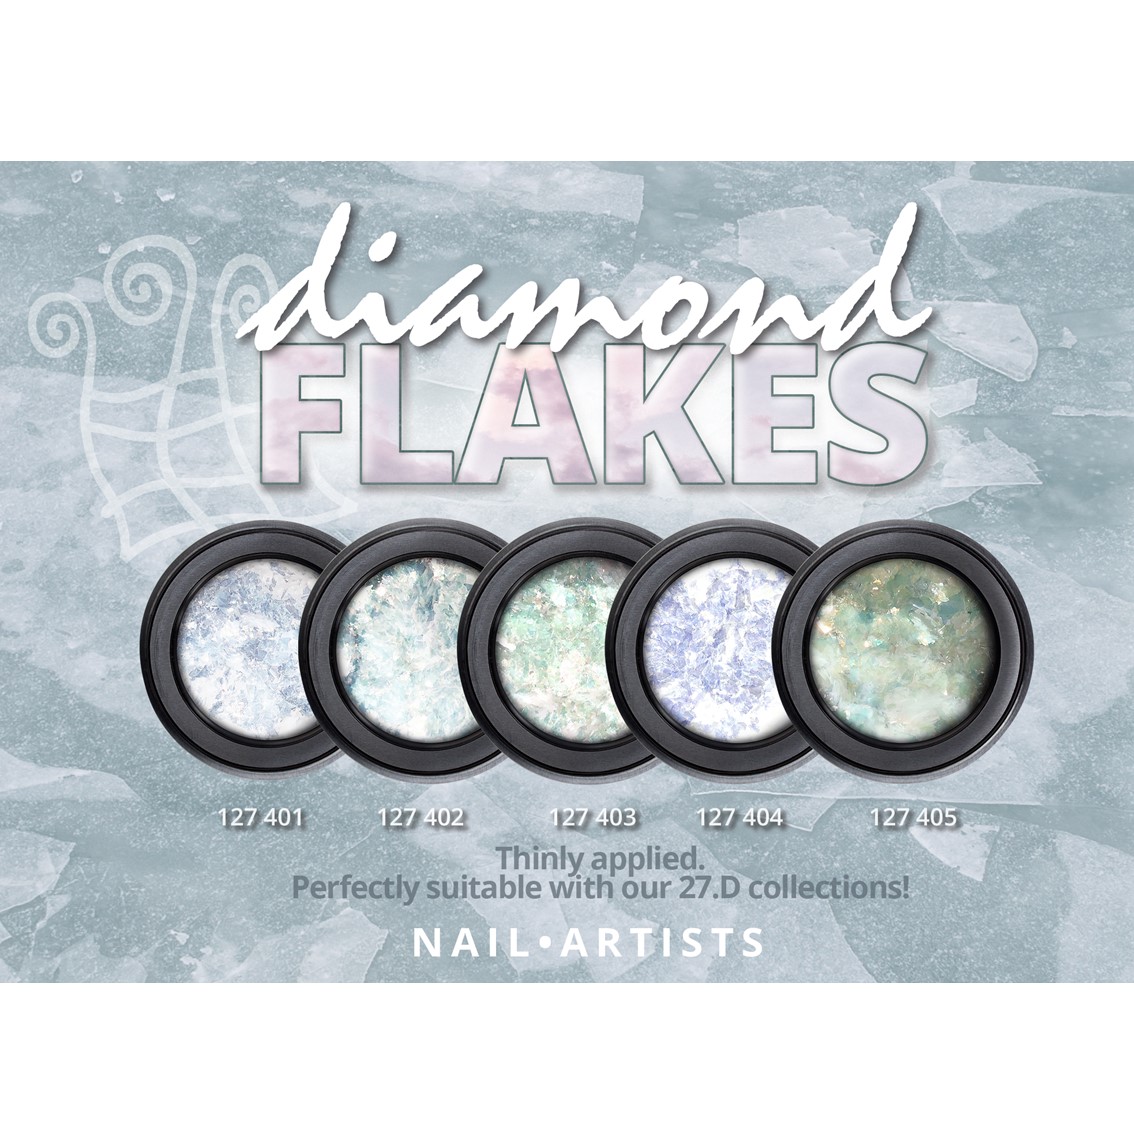 Nail Artists Diamond Flakes 003